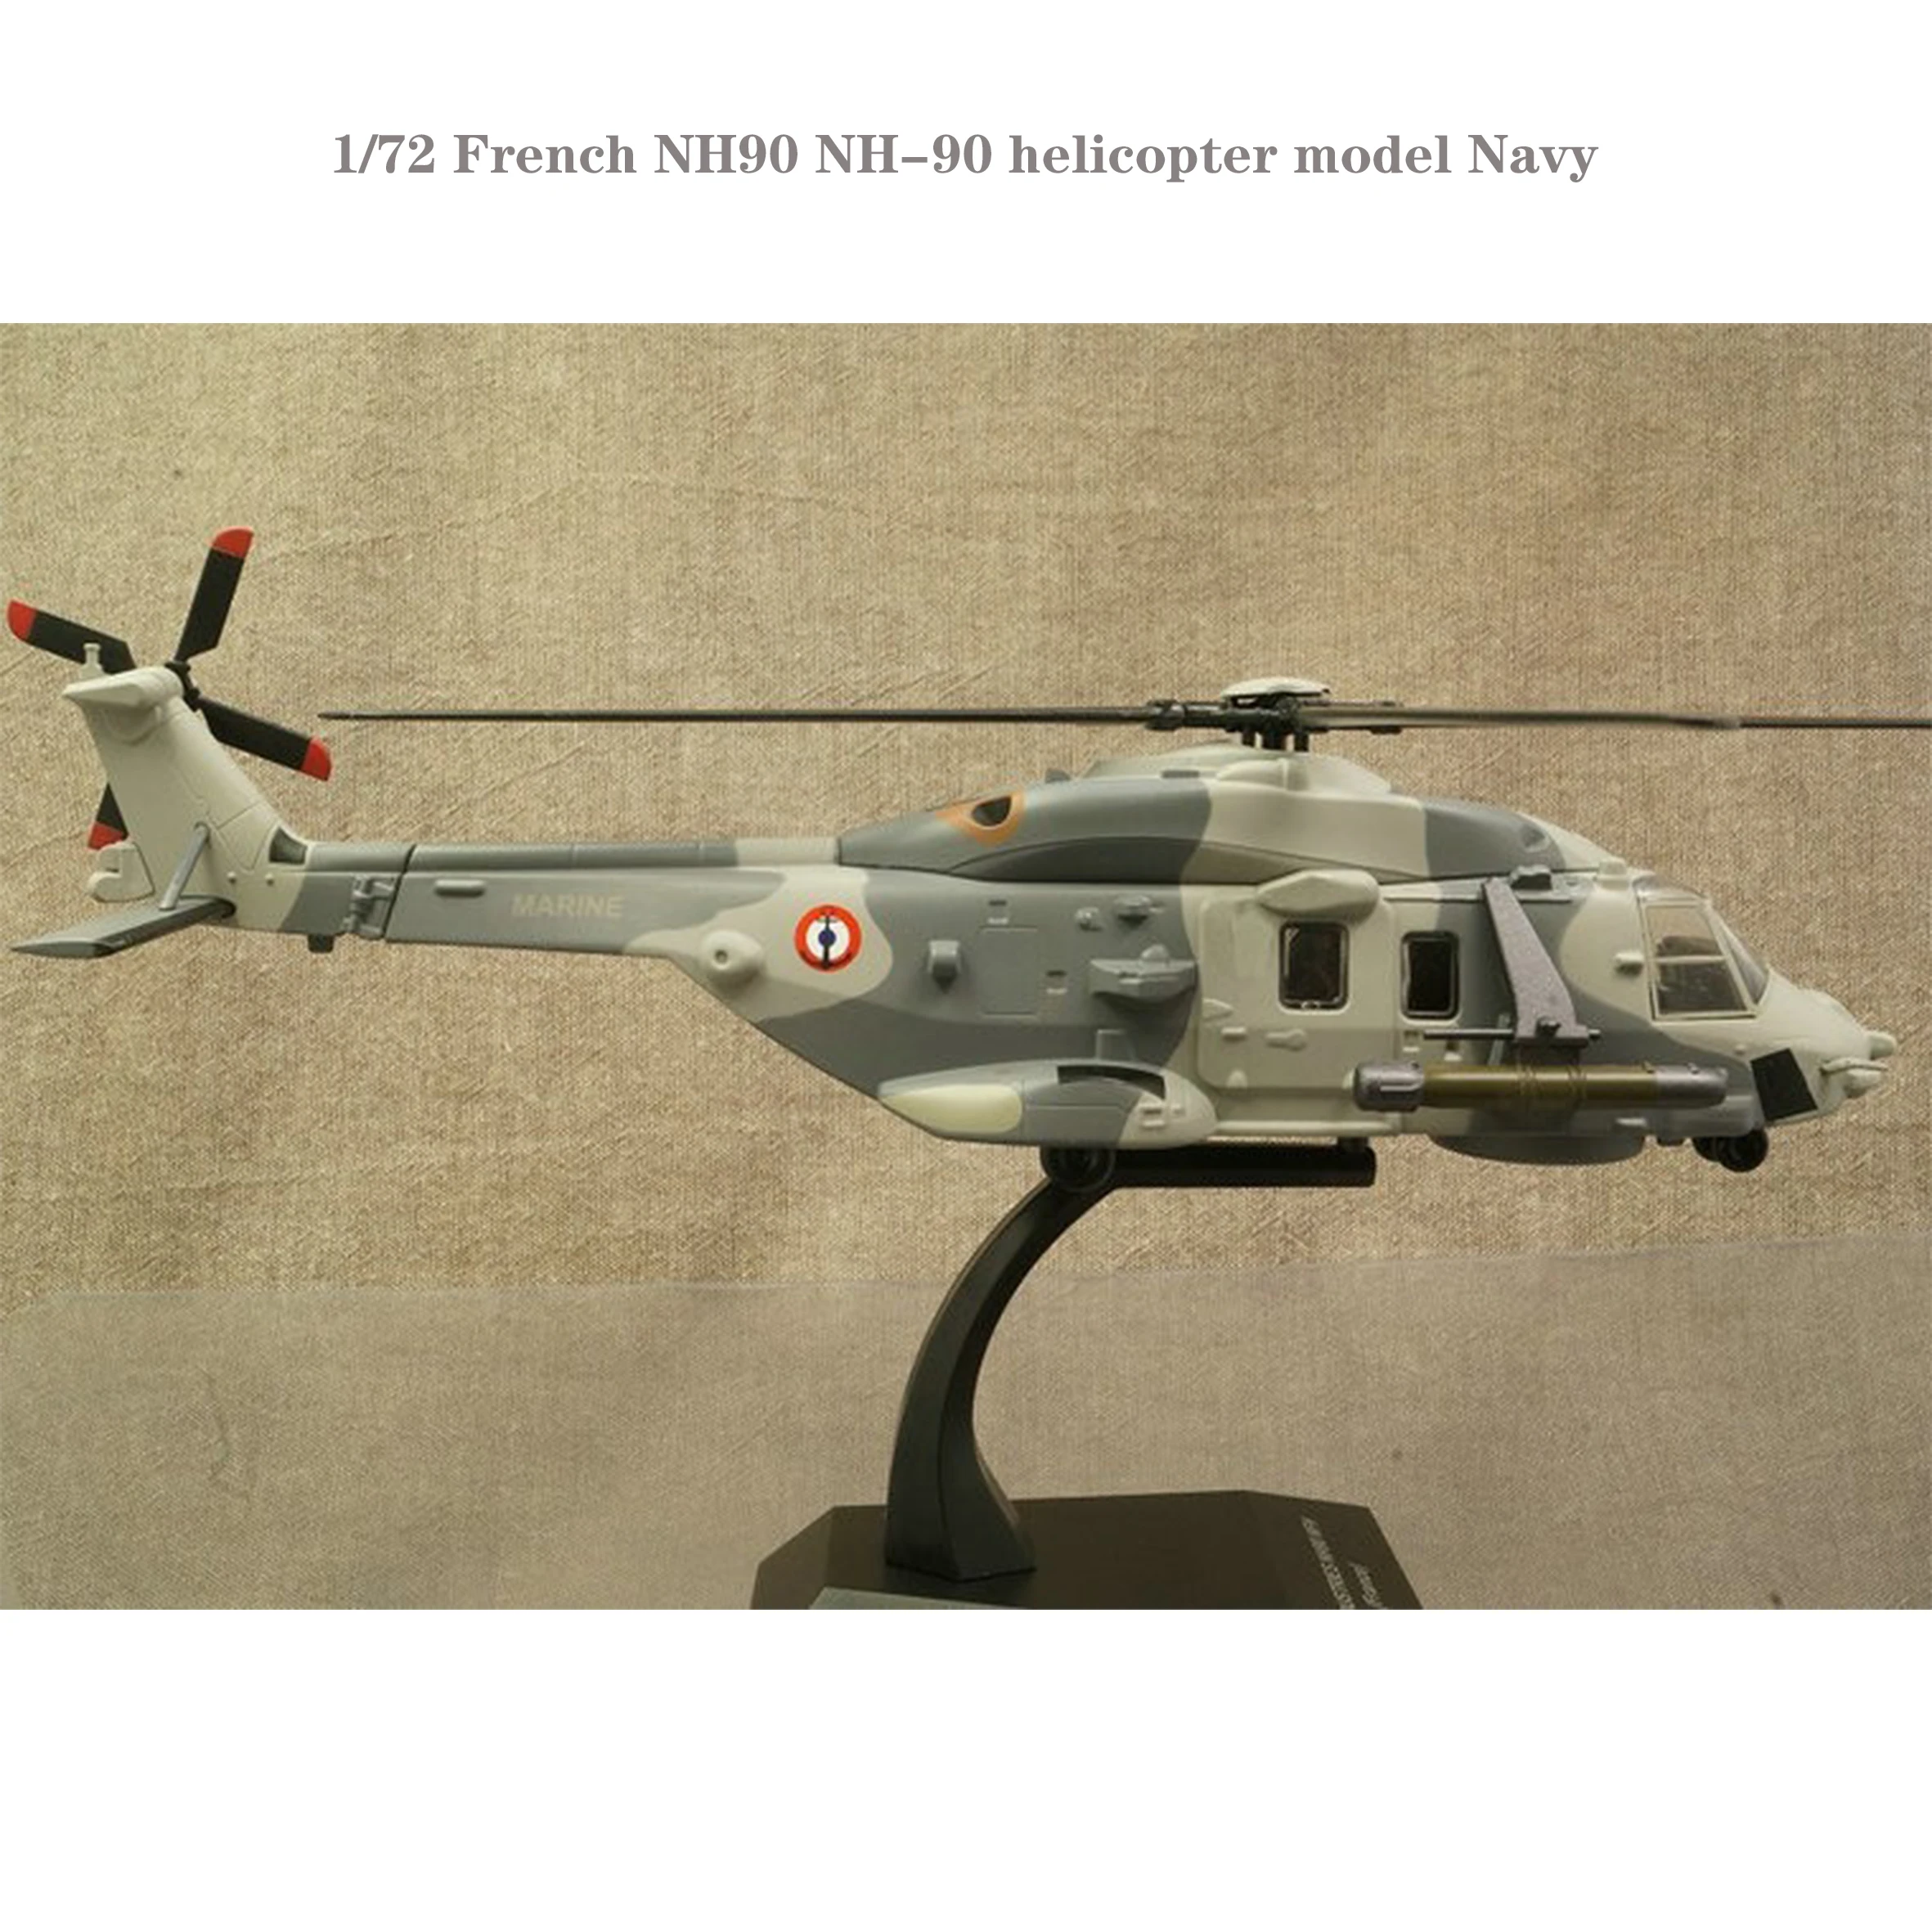 

Редкая и непечатная модель вертолета 1/72 французский стиль NH90 модель военно-морского флота Коллекционная модель готового продукта